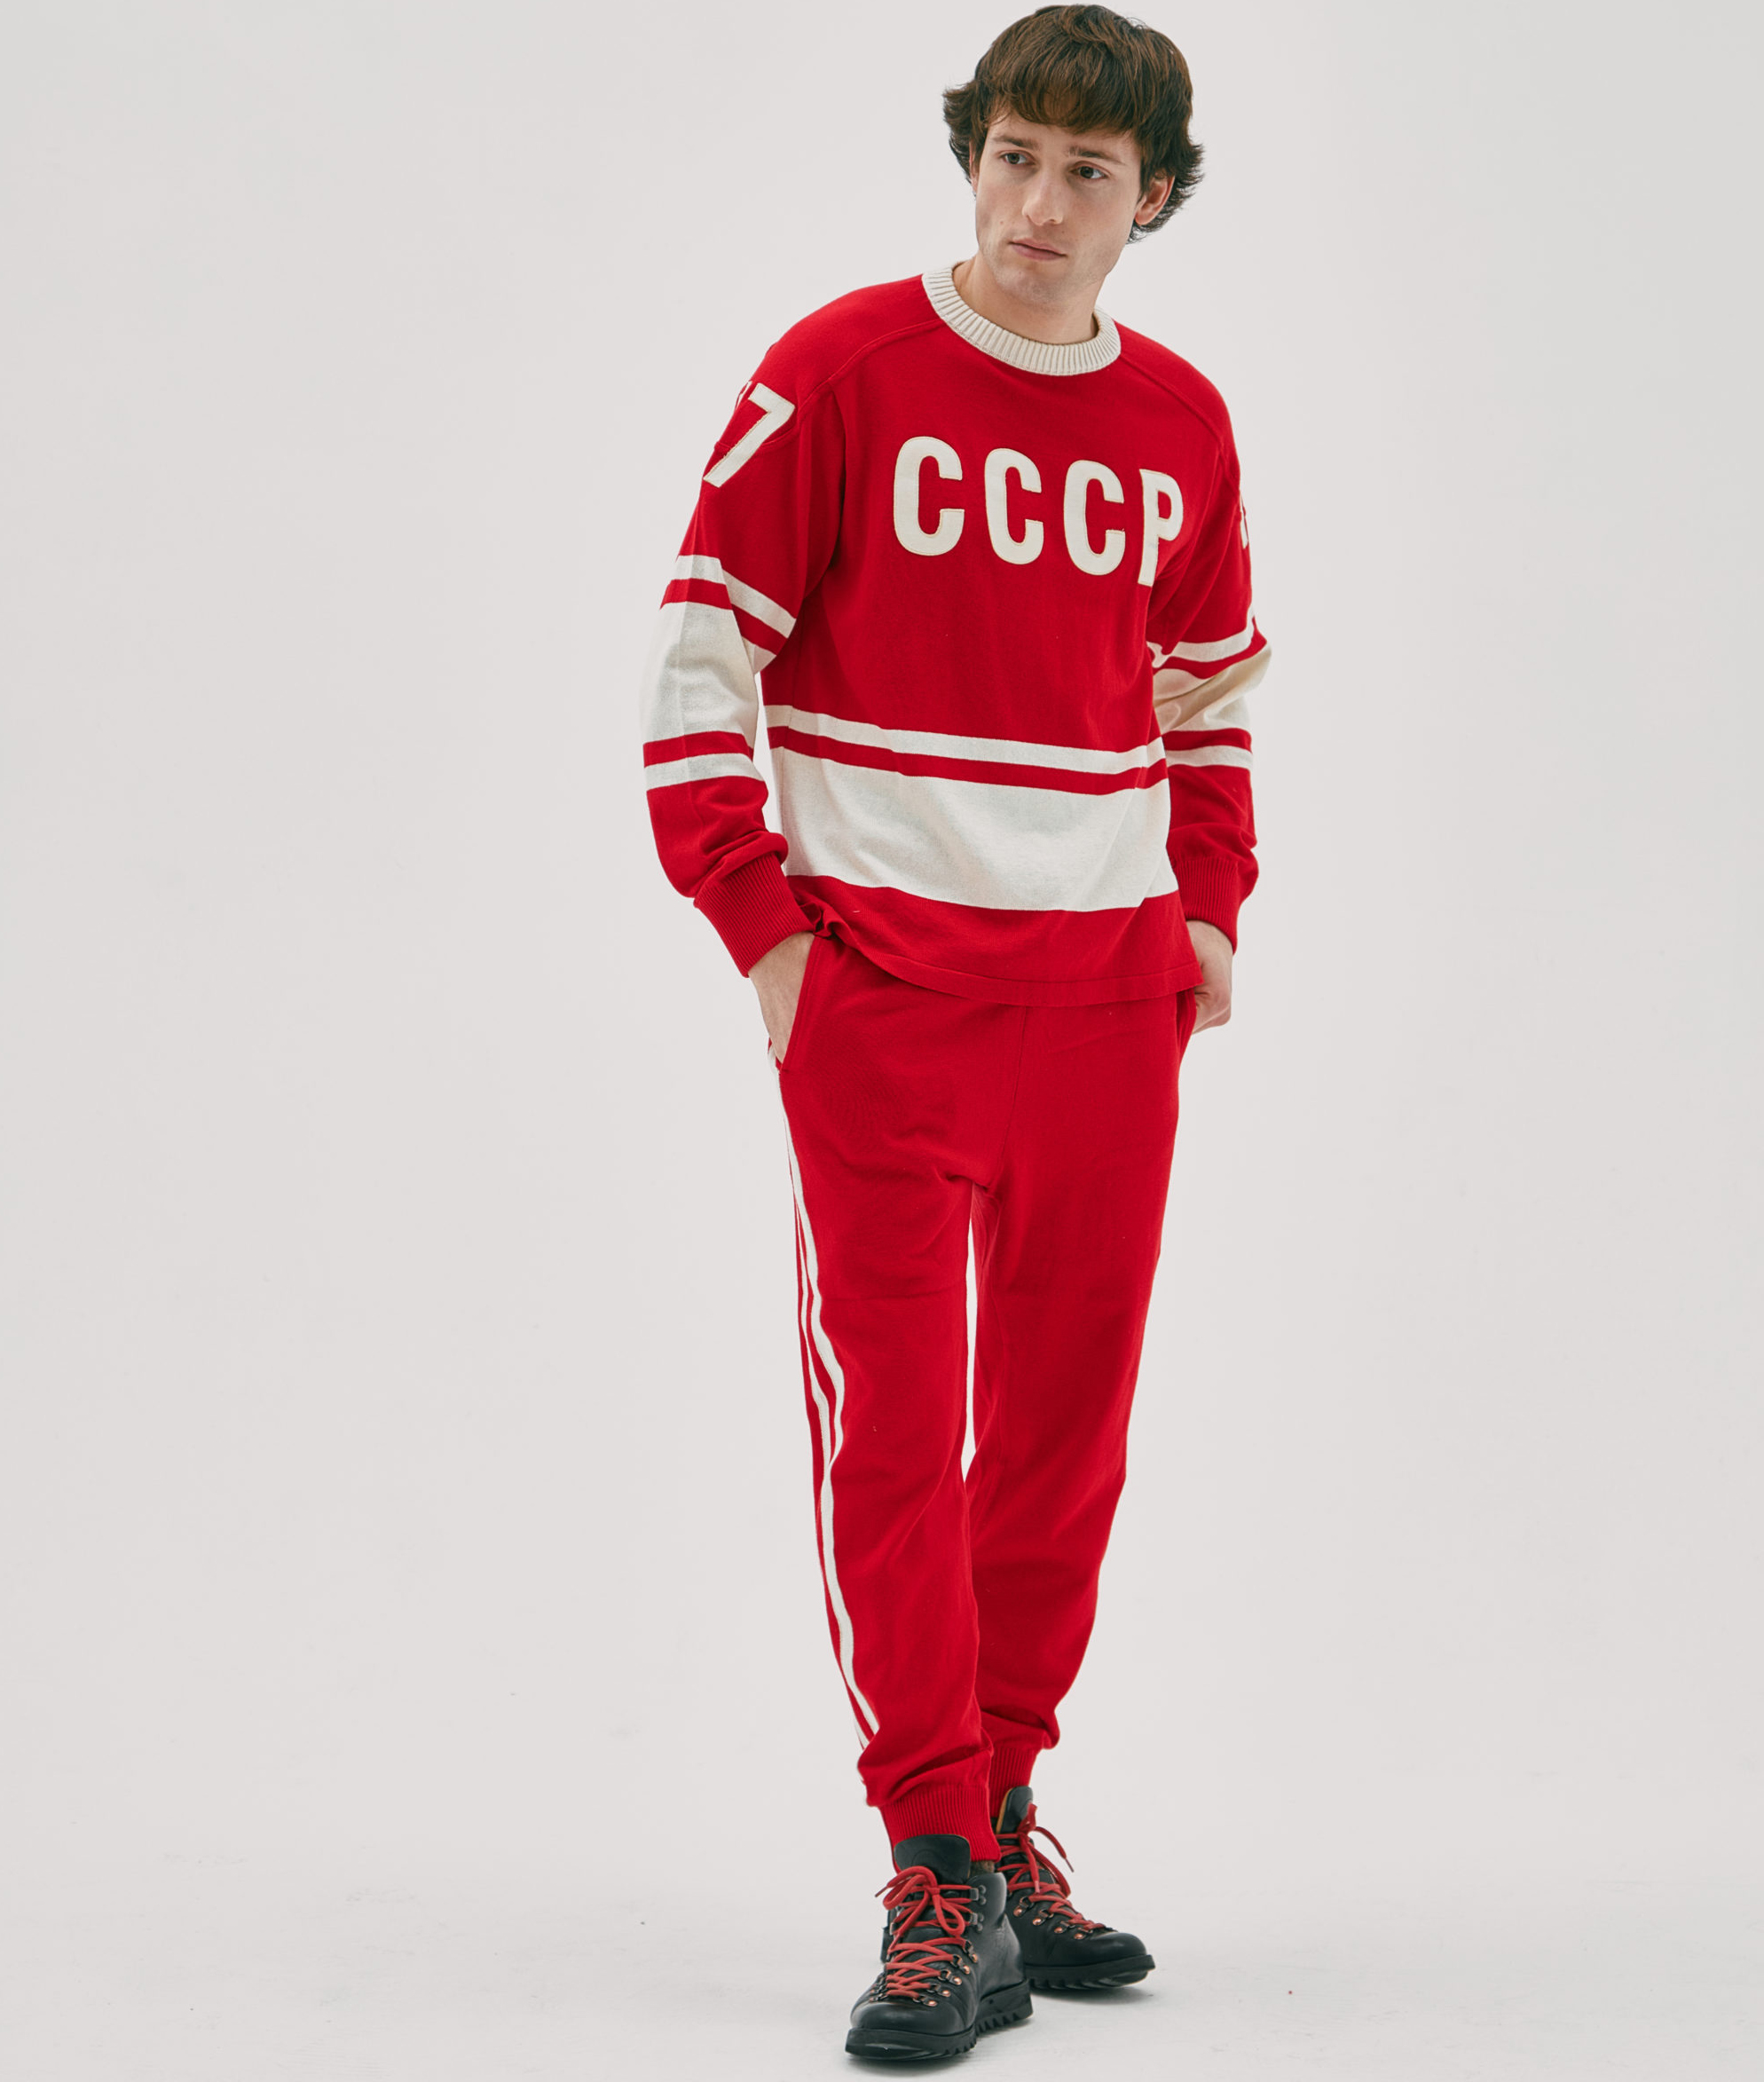 Не adidasом единым... Спортивные костюмы российских брендов